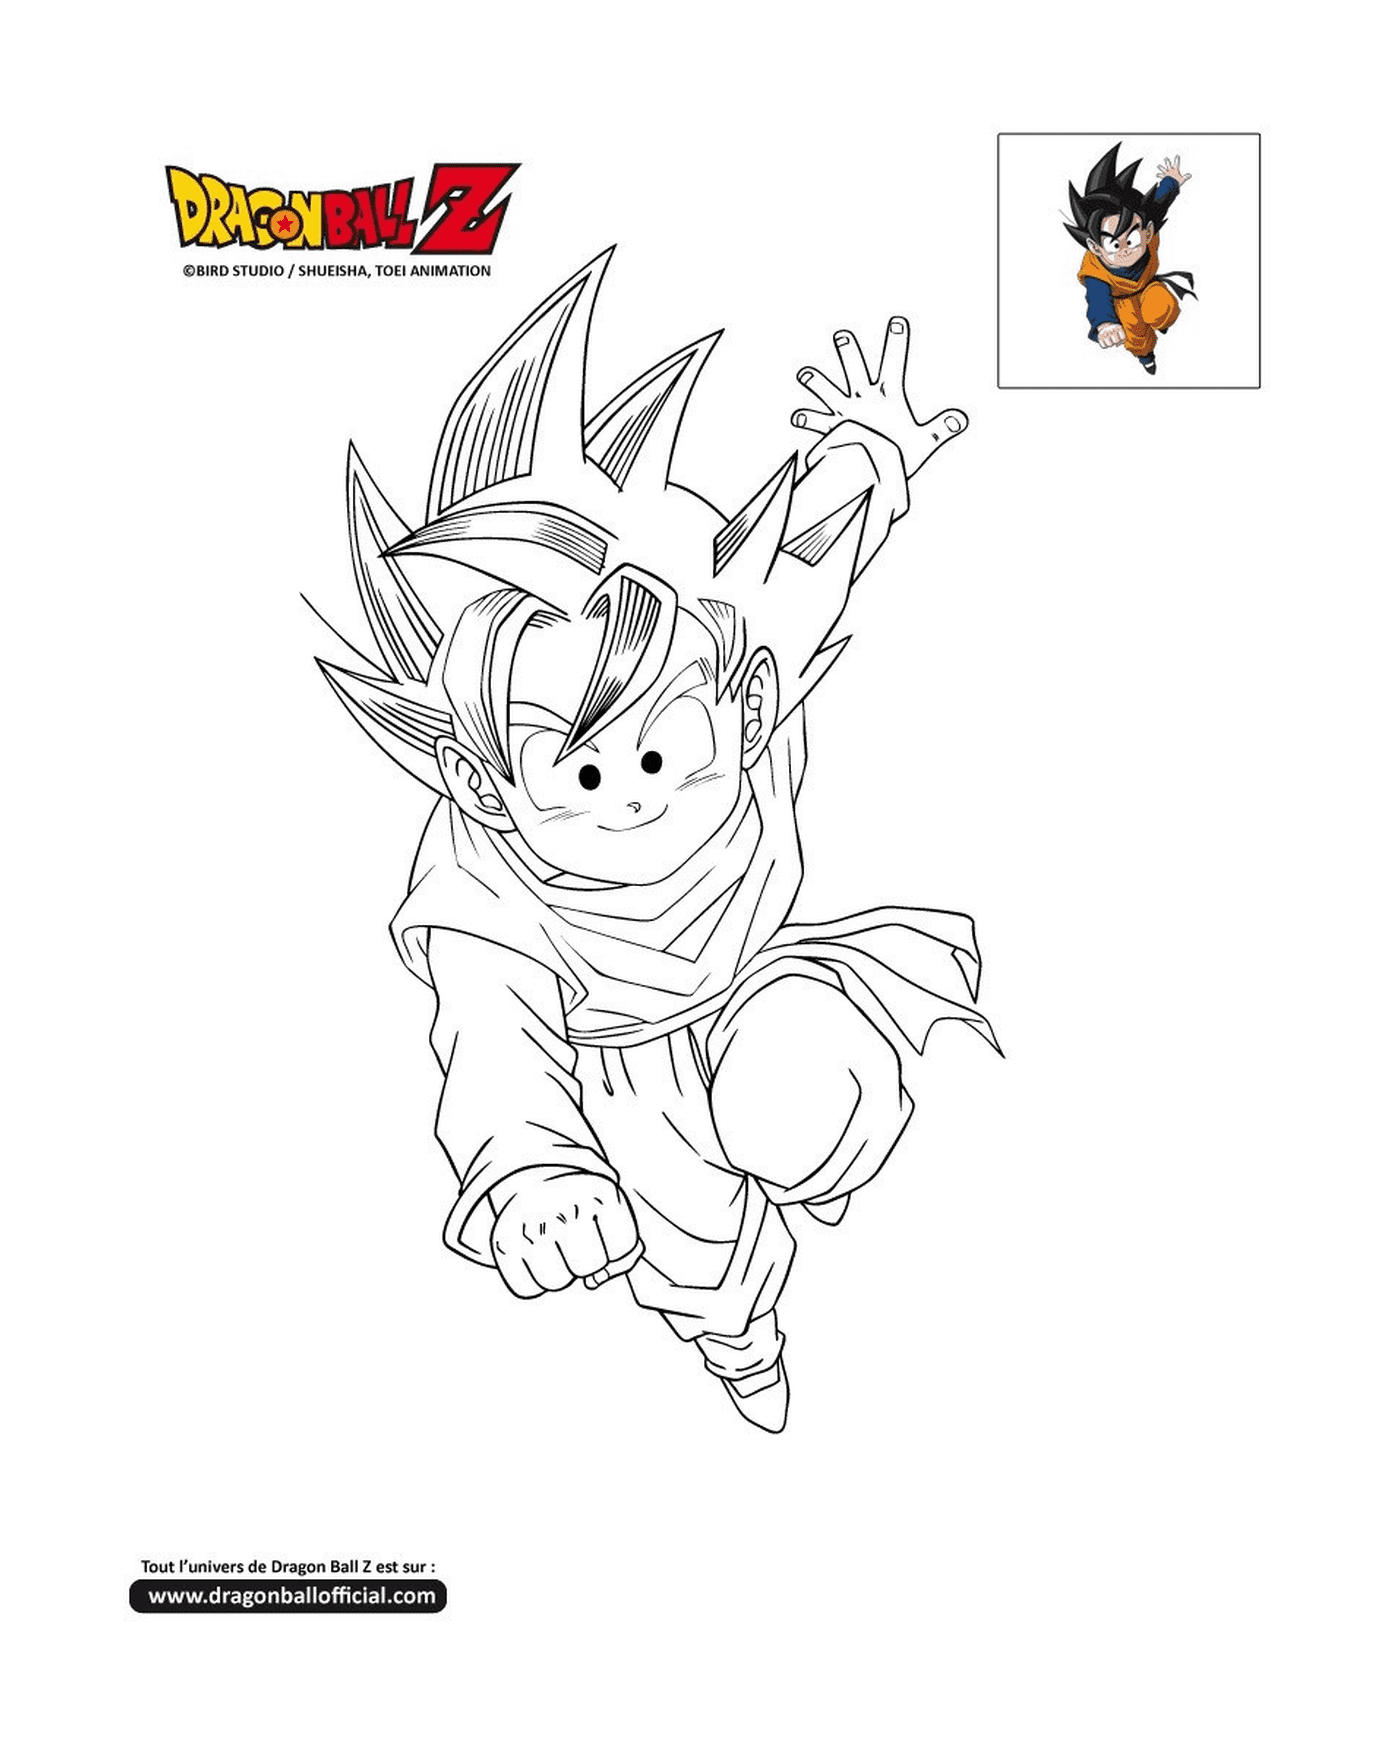  Goten, ein junger Goku, der in der Luft in Dragon Ball Z springt 